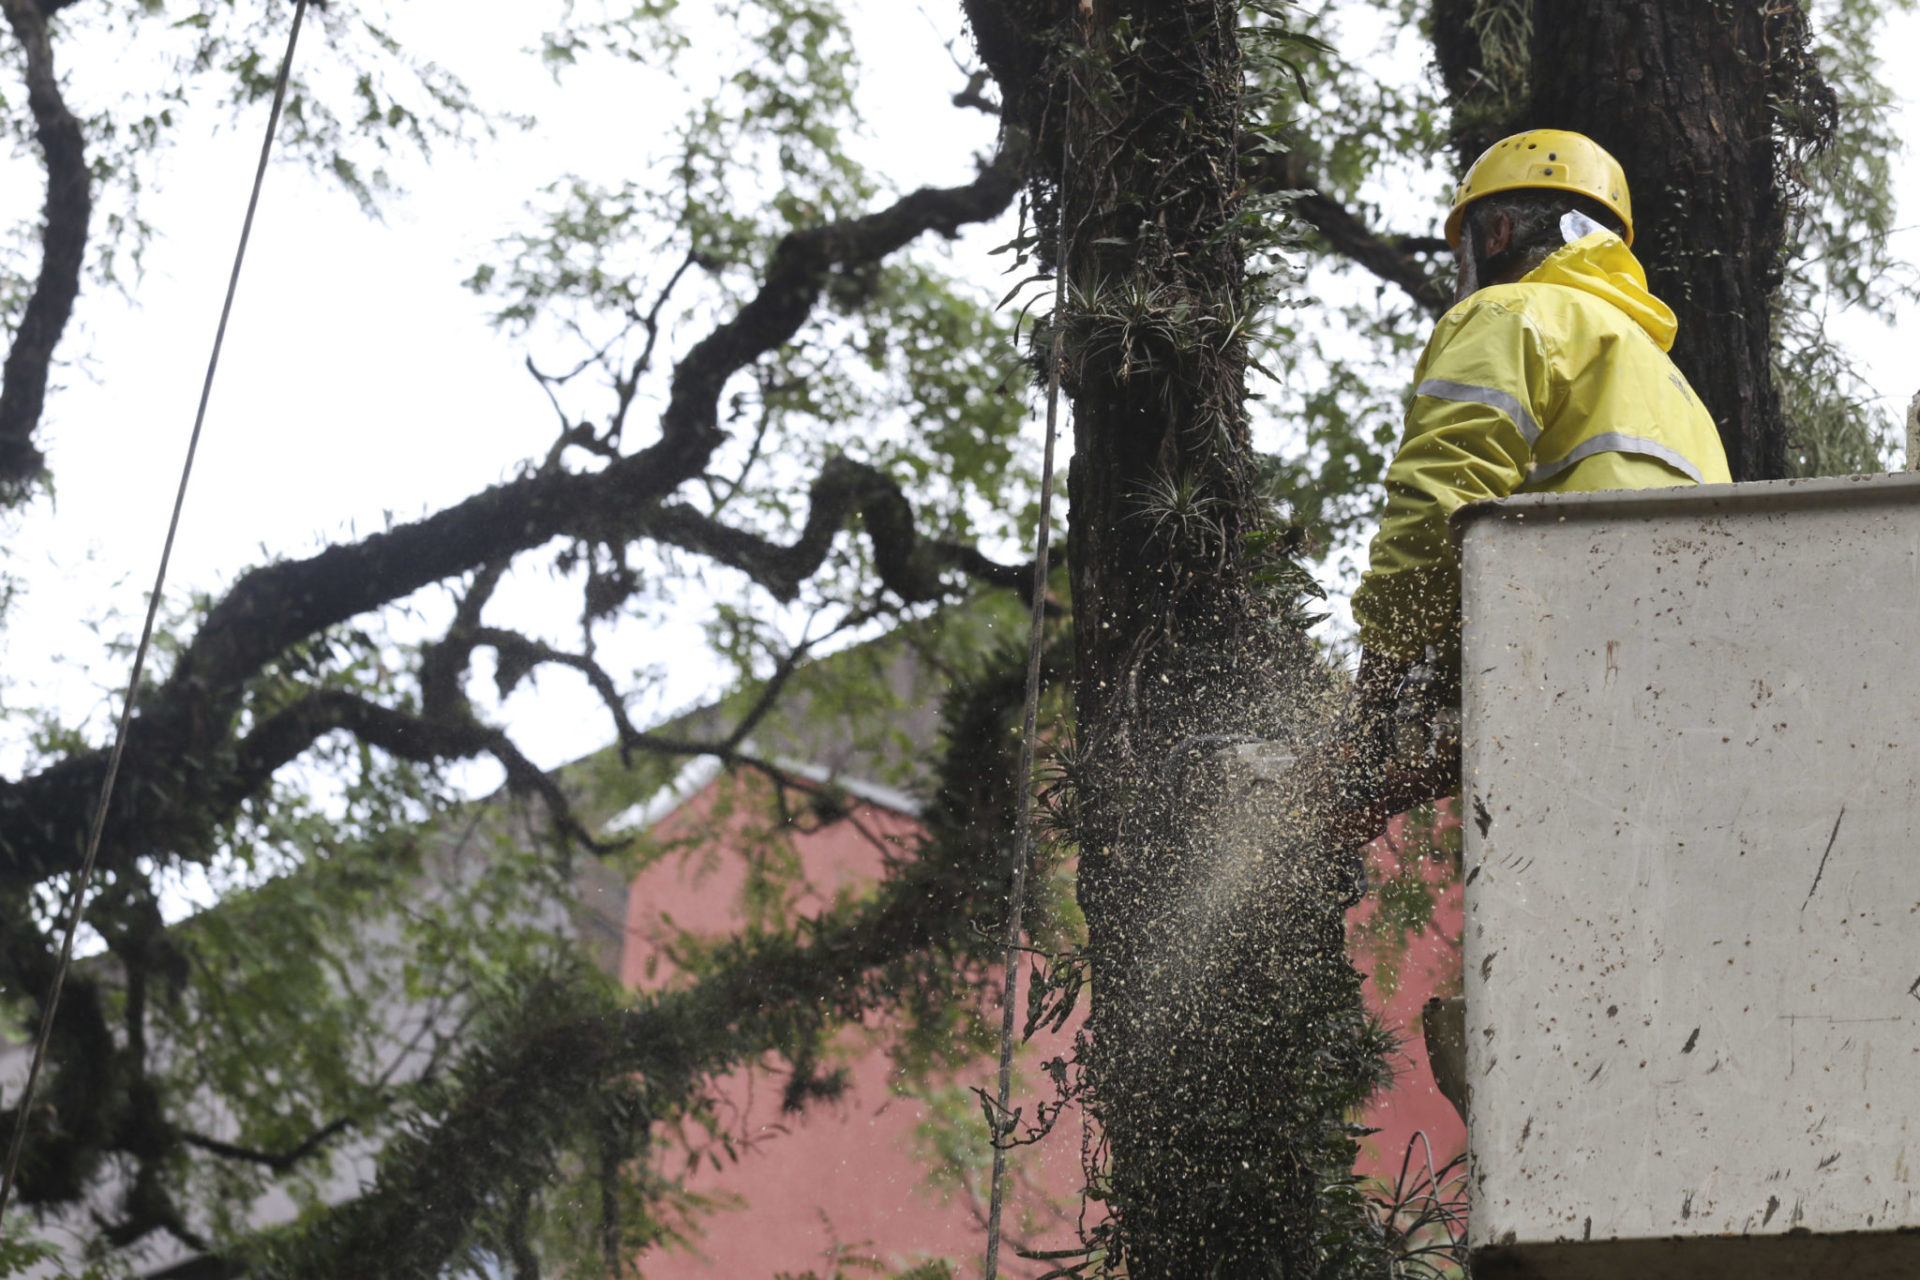 Equipes removendo árvore com risco de queda na Praça Dom Feliciano. Foto: Luciano Lanes/PMPA